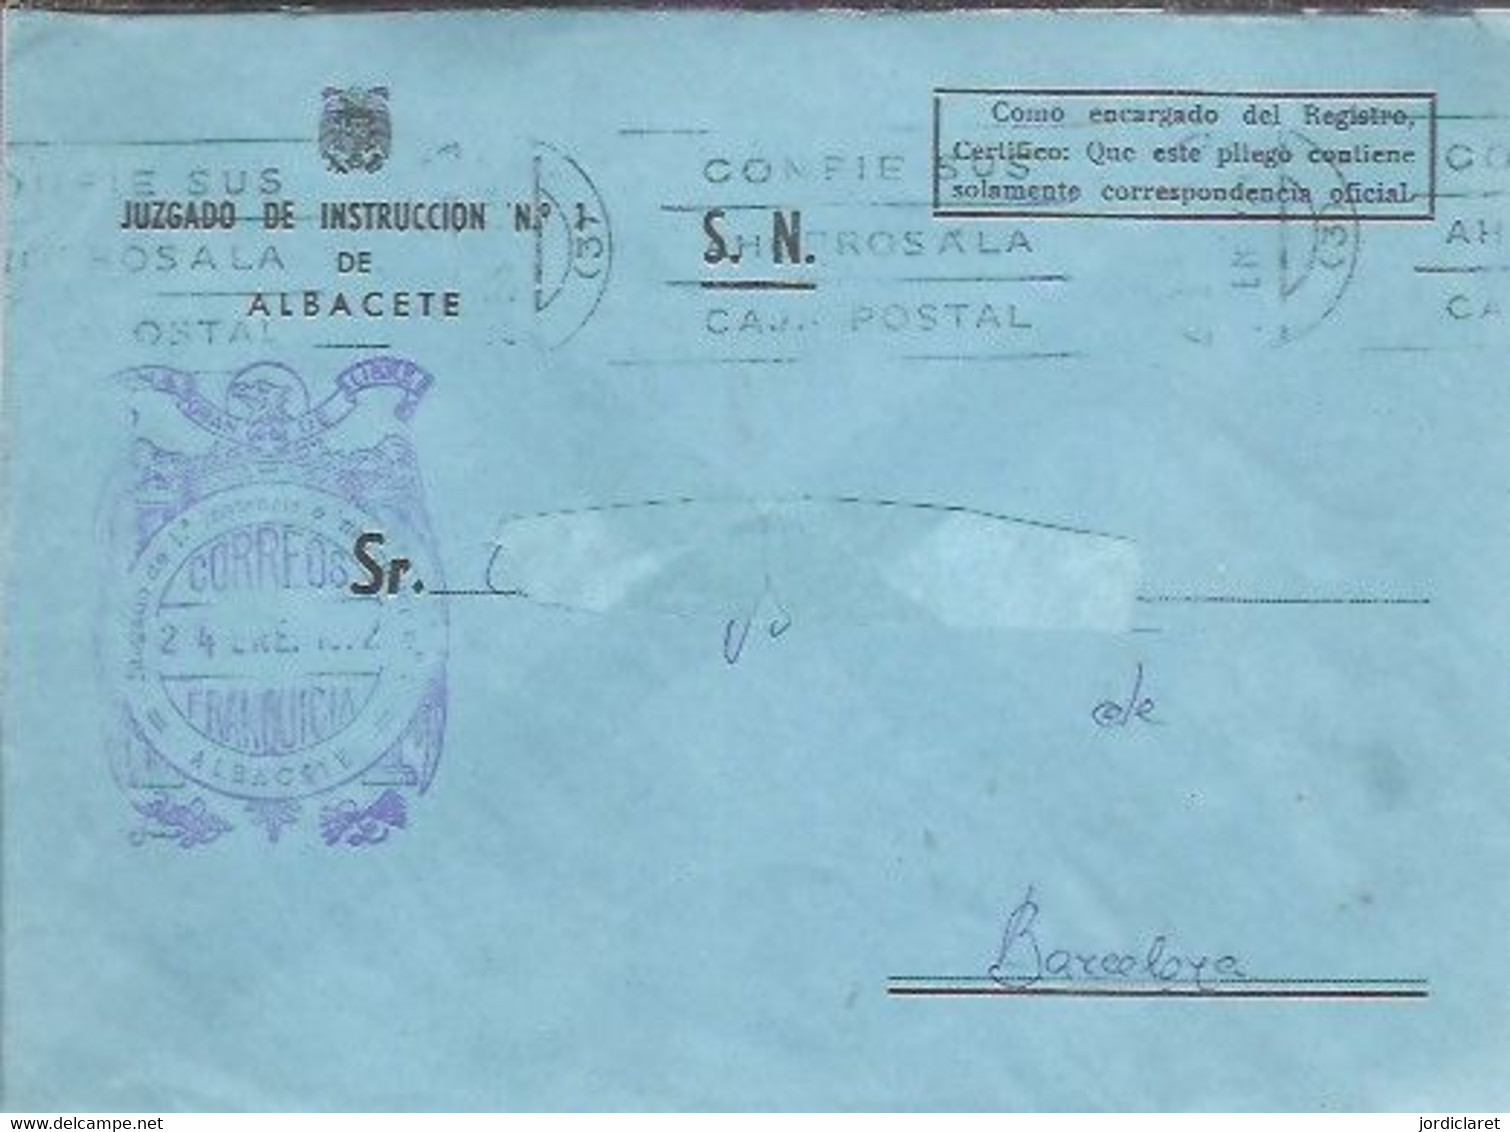 JUZGADO DE INSTRUCION   ALBACETE - Franchise Postale